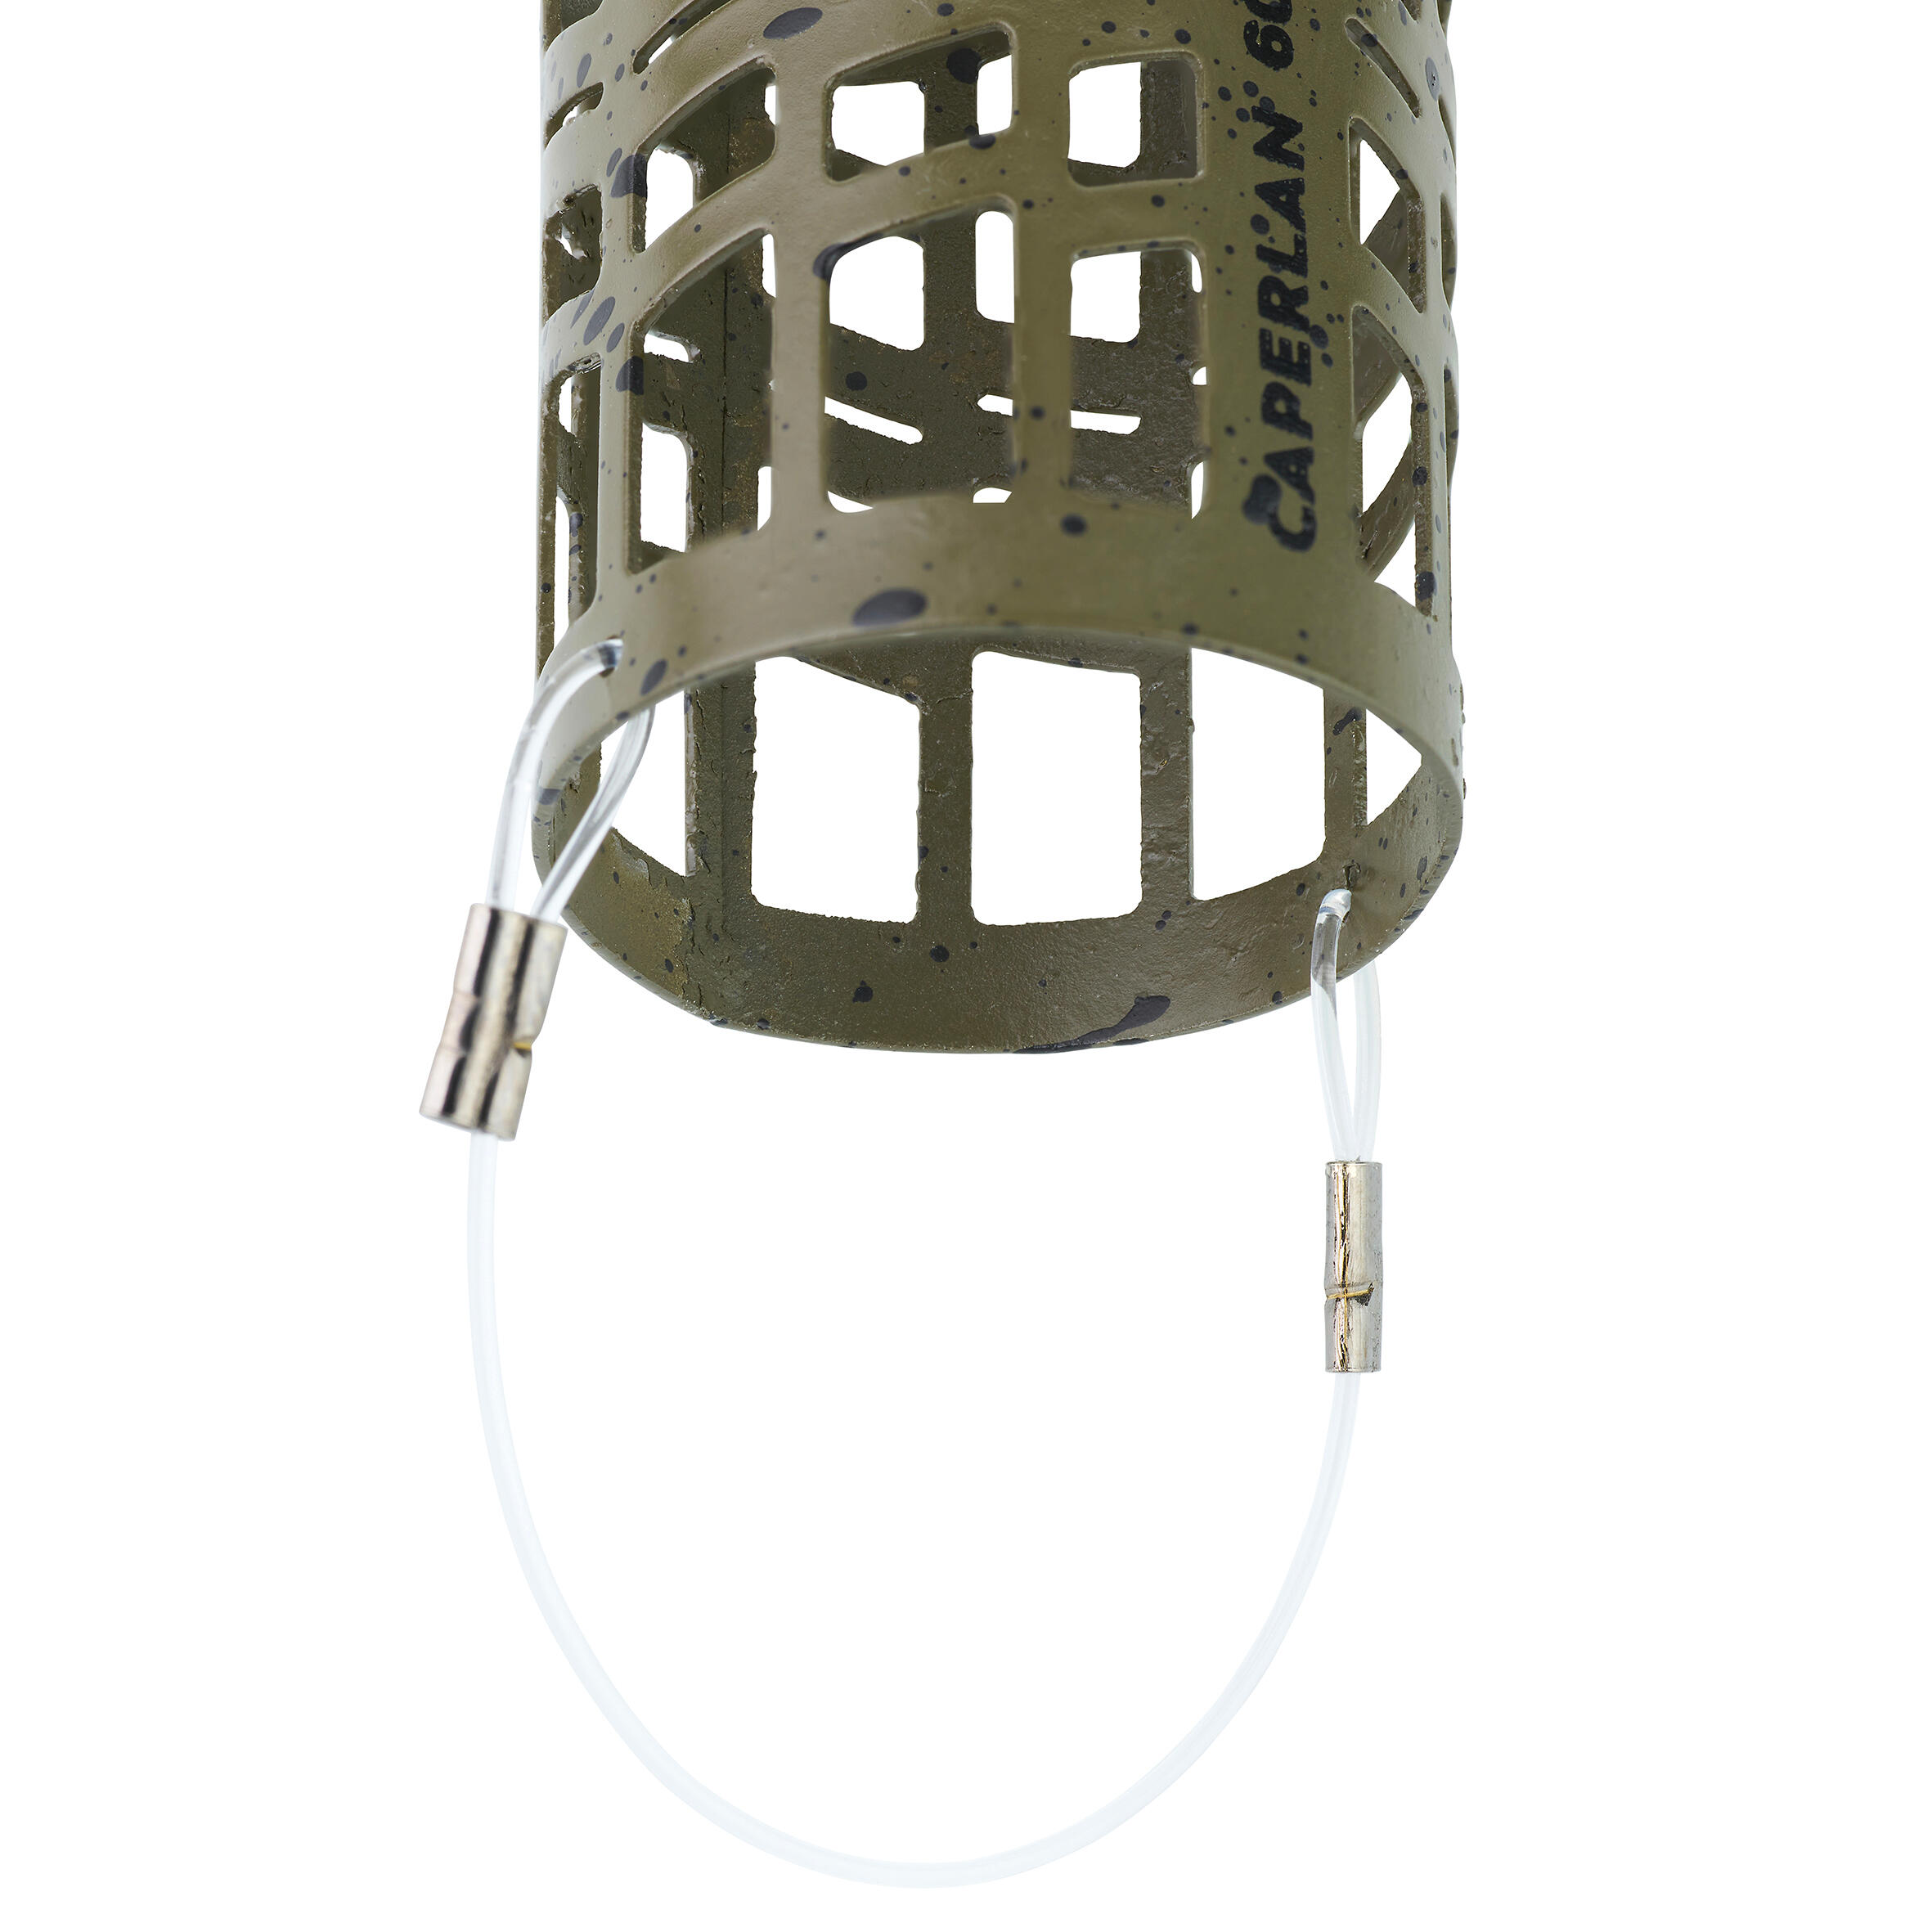 Cage distance feeder DST M 60g 5/7